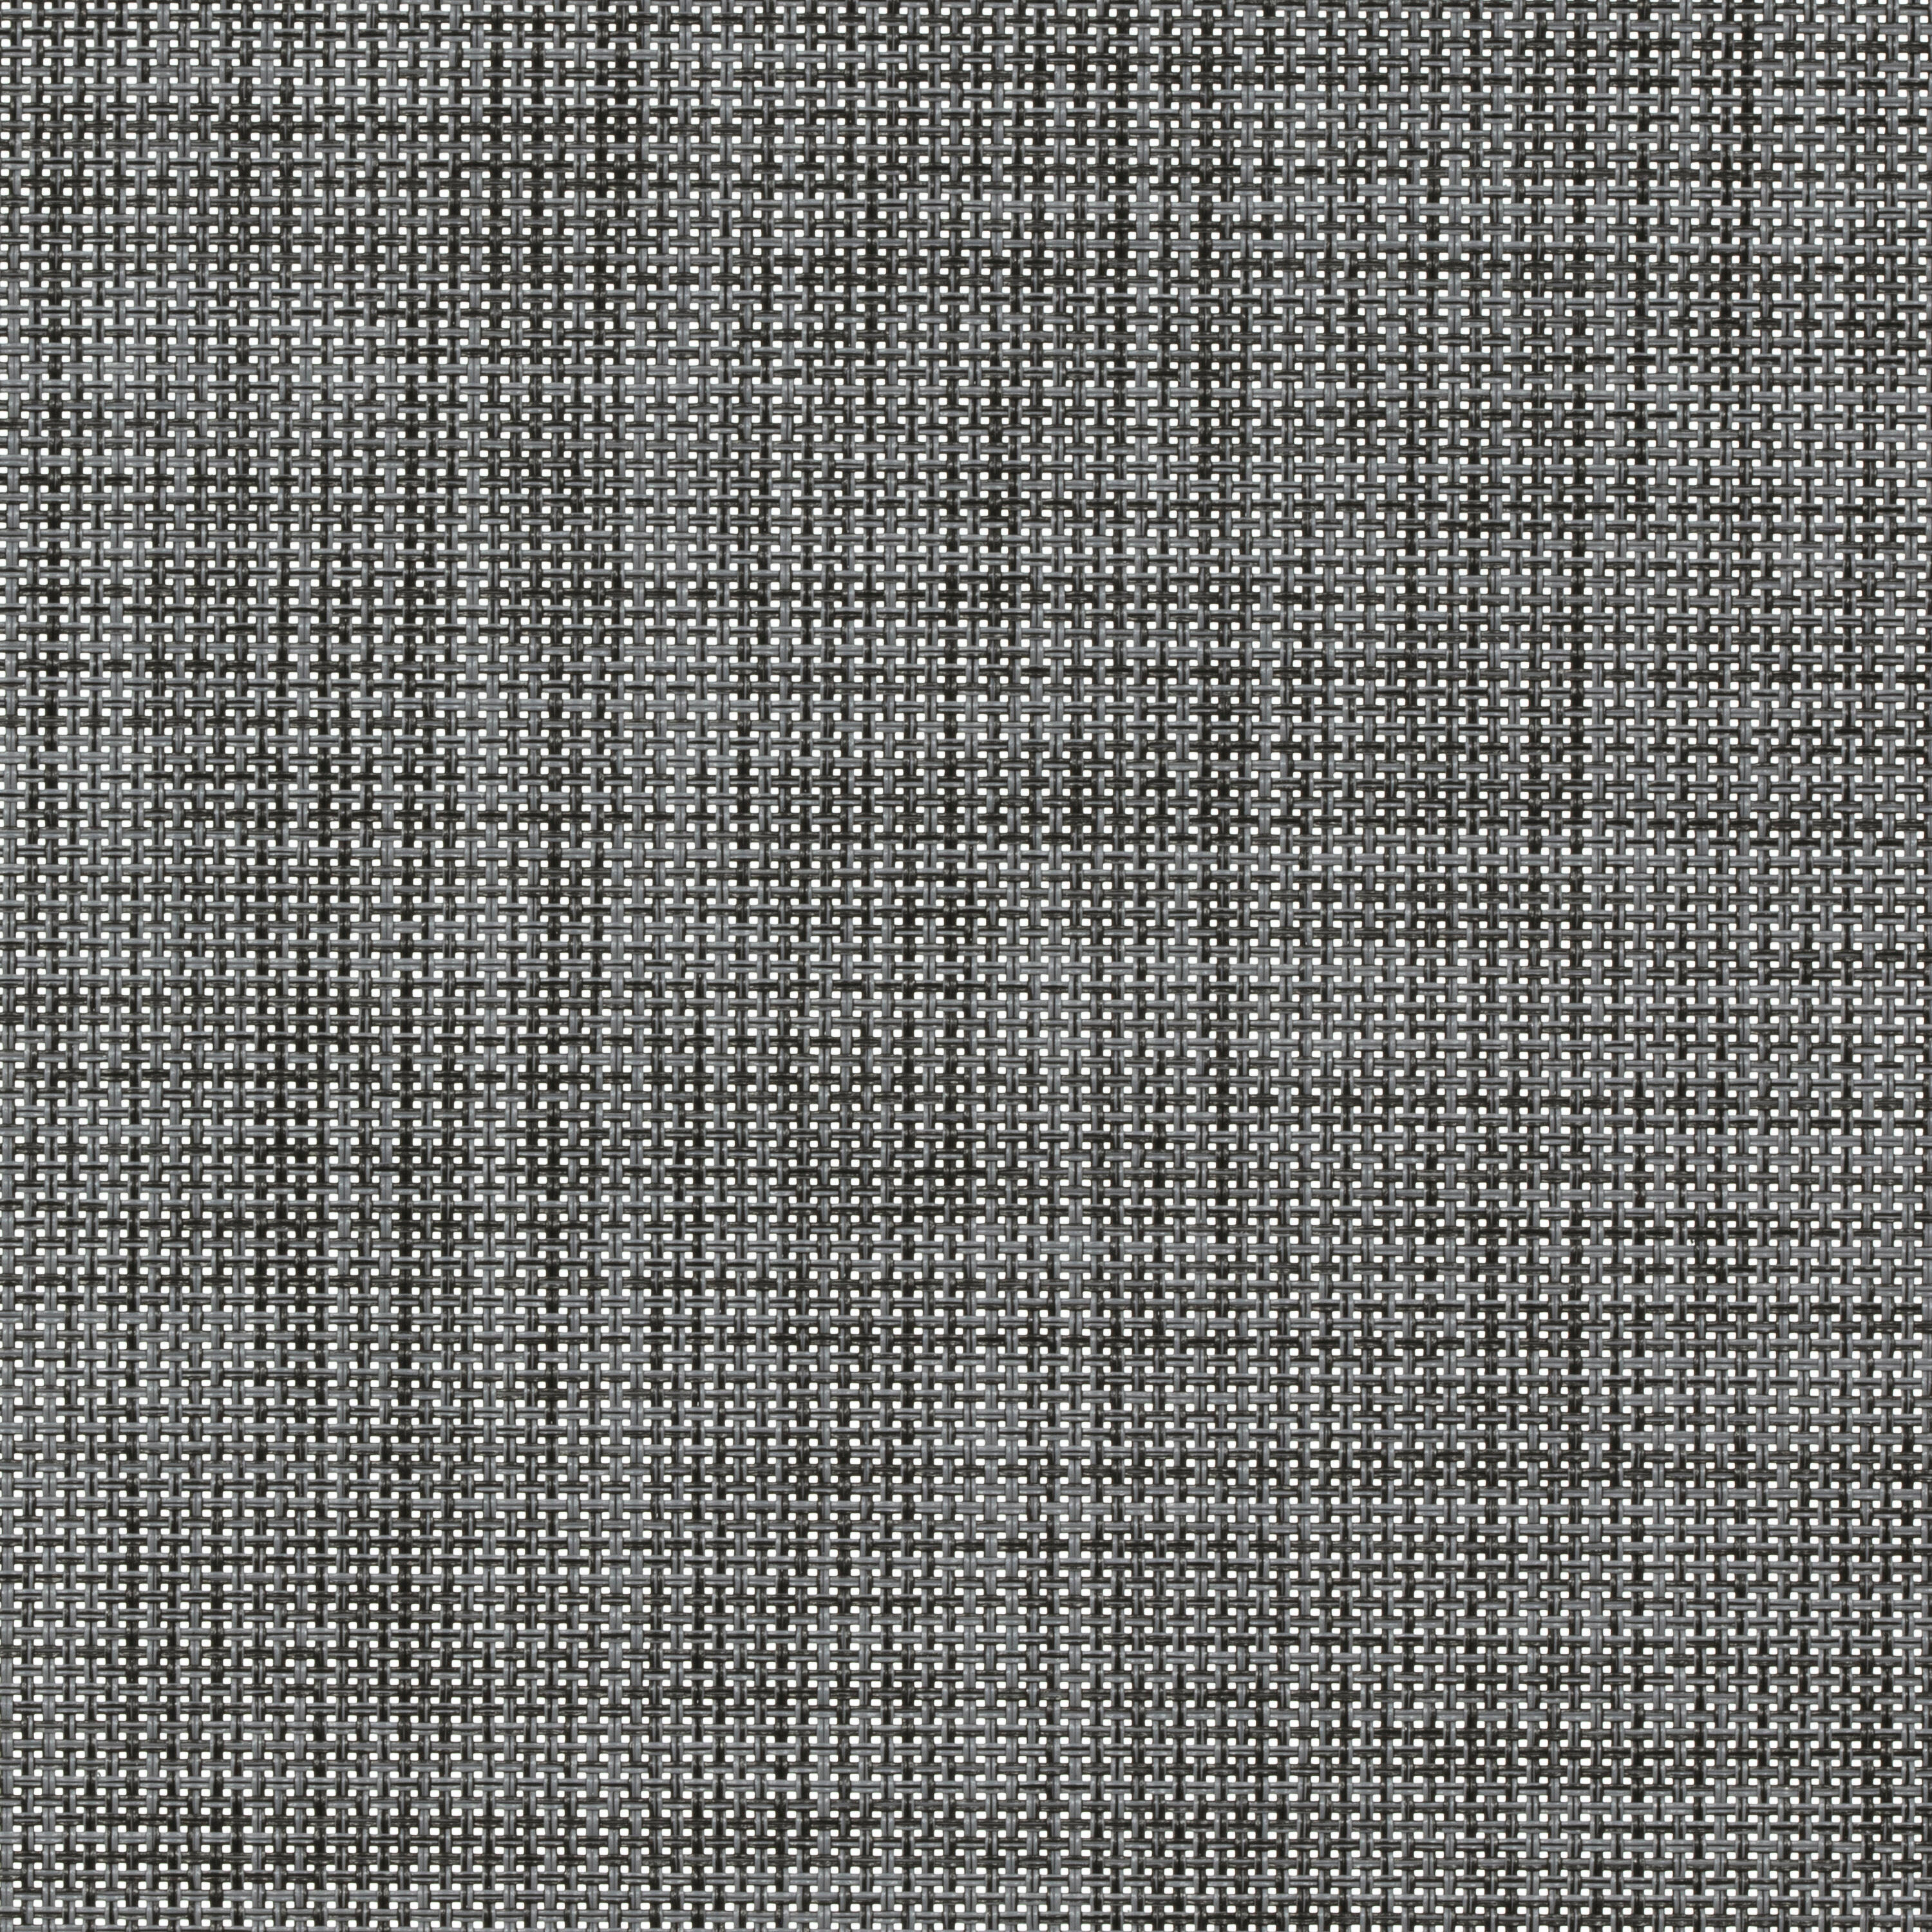 Tessuto per tende a rullo filtrante INSPIRE Puebla grigio / argento 55.8 x 190 cm - 3